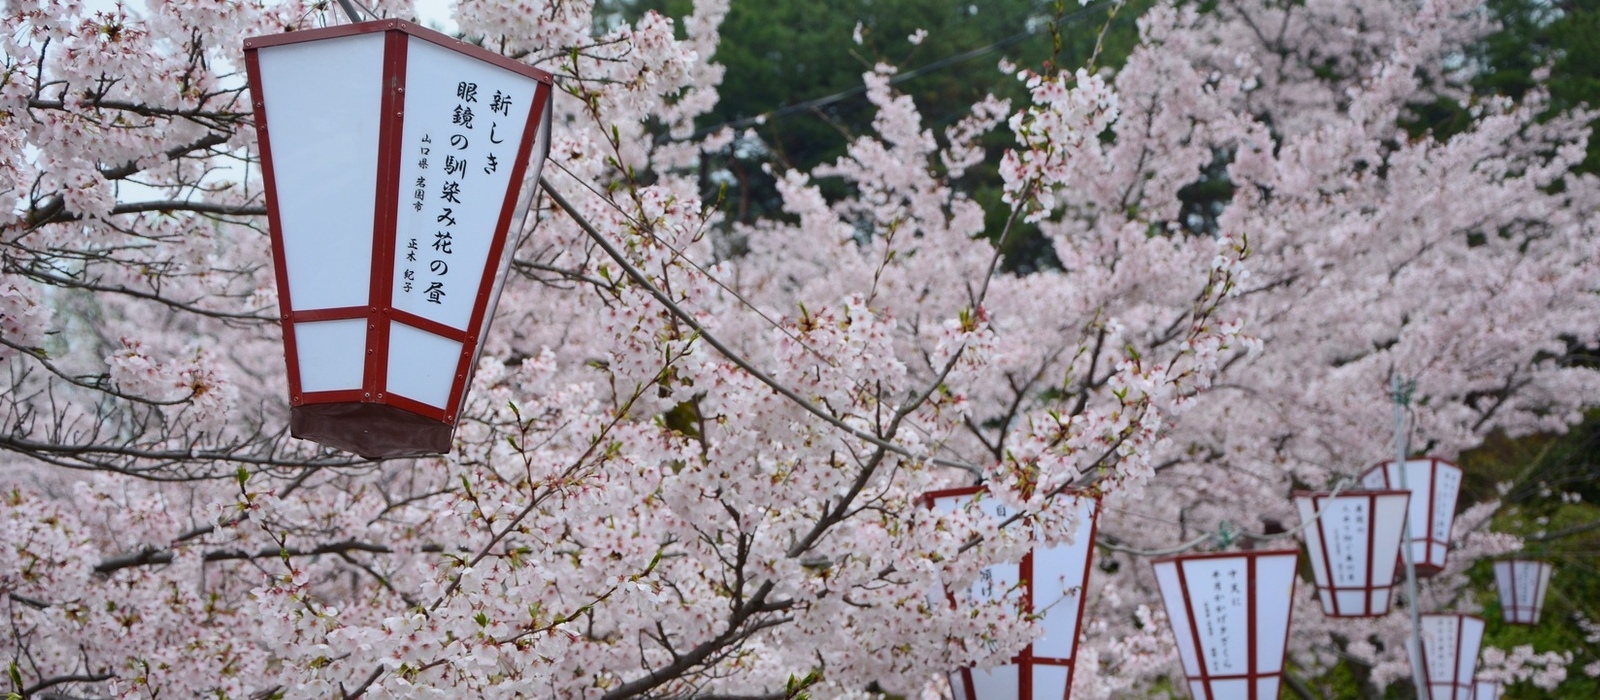 ”さくらの名所100選”に選定されている千光寺公園。3月16日～4月14日までぼんぼりがライトアップされます！